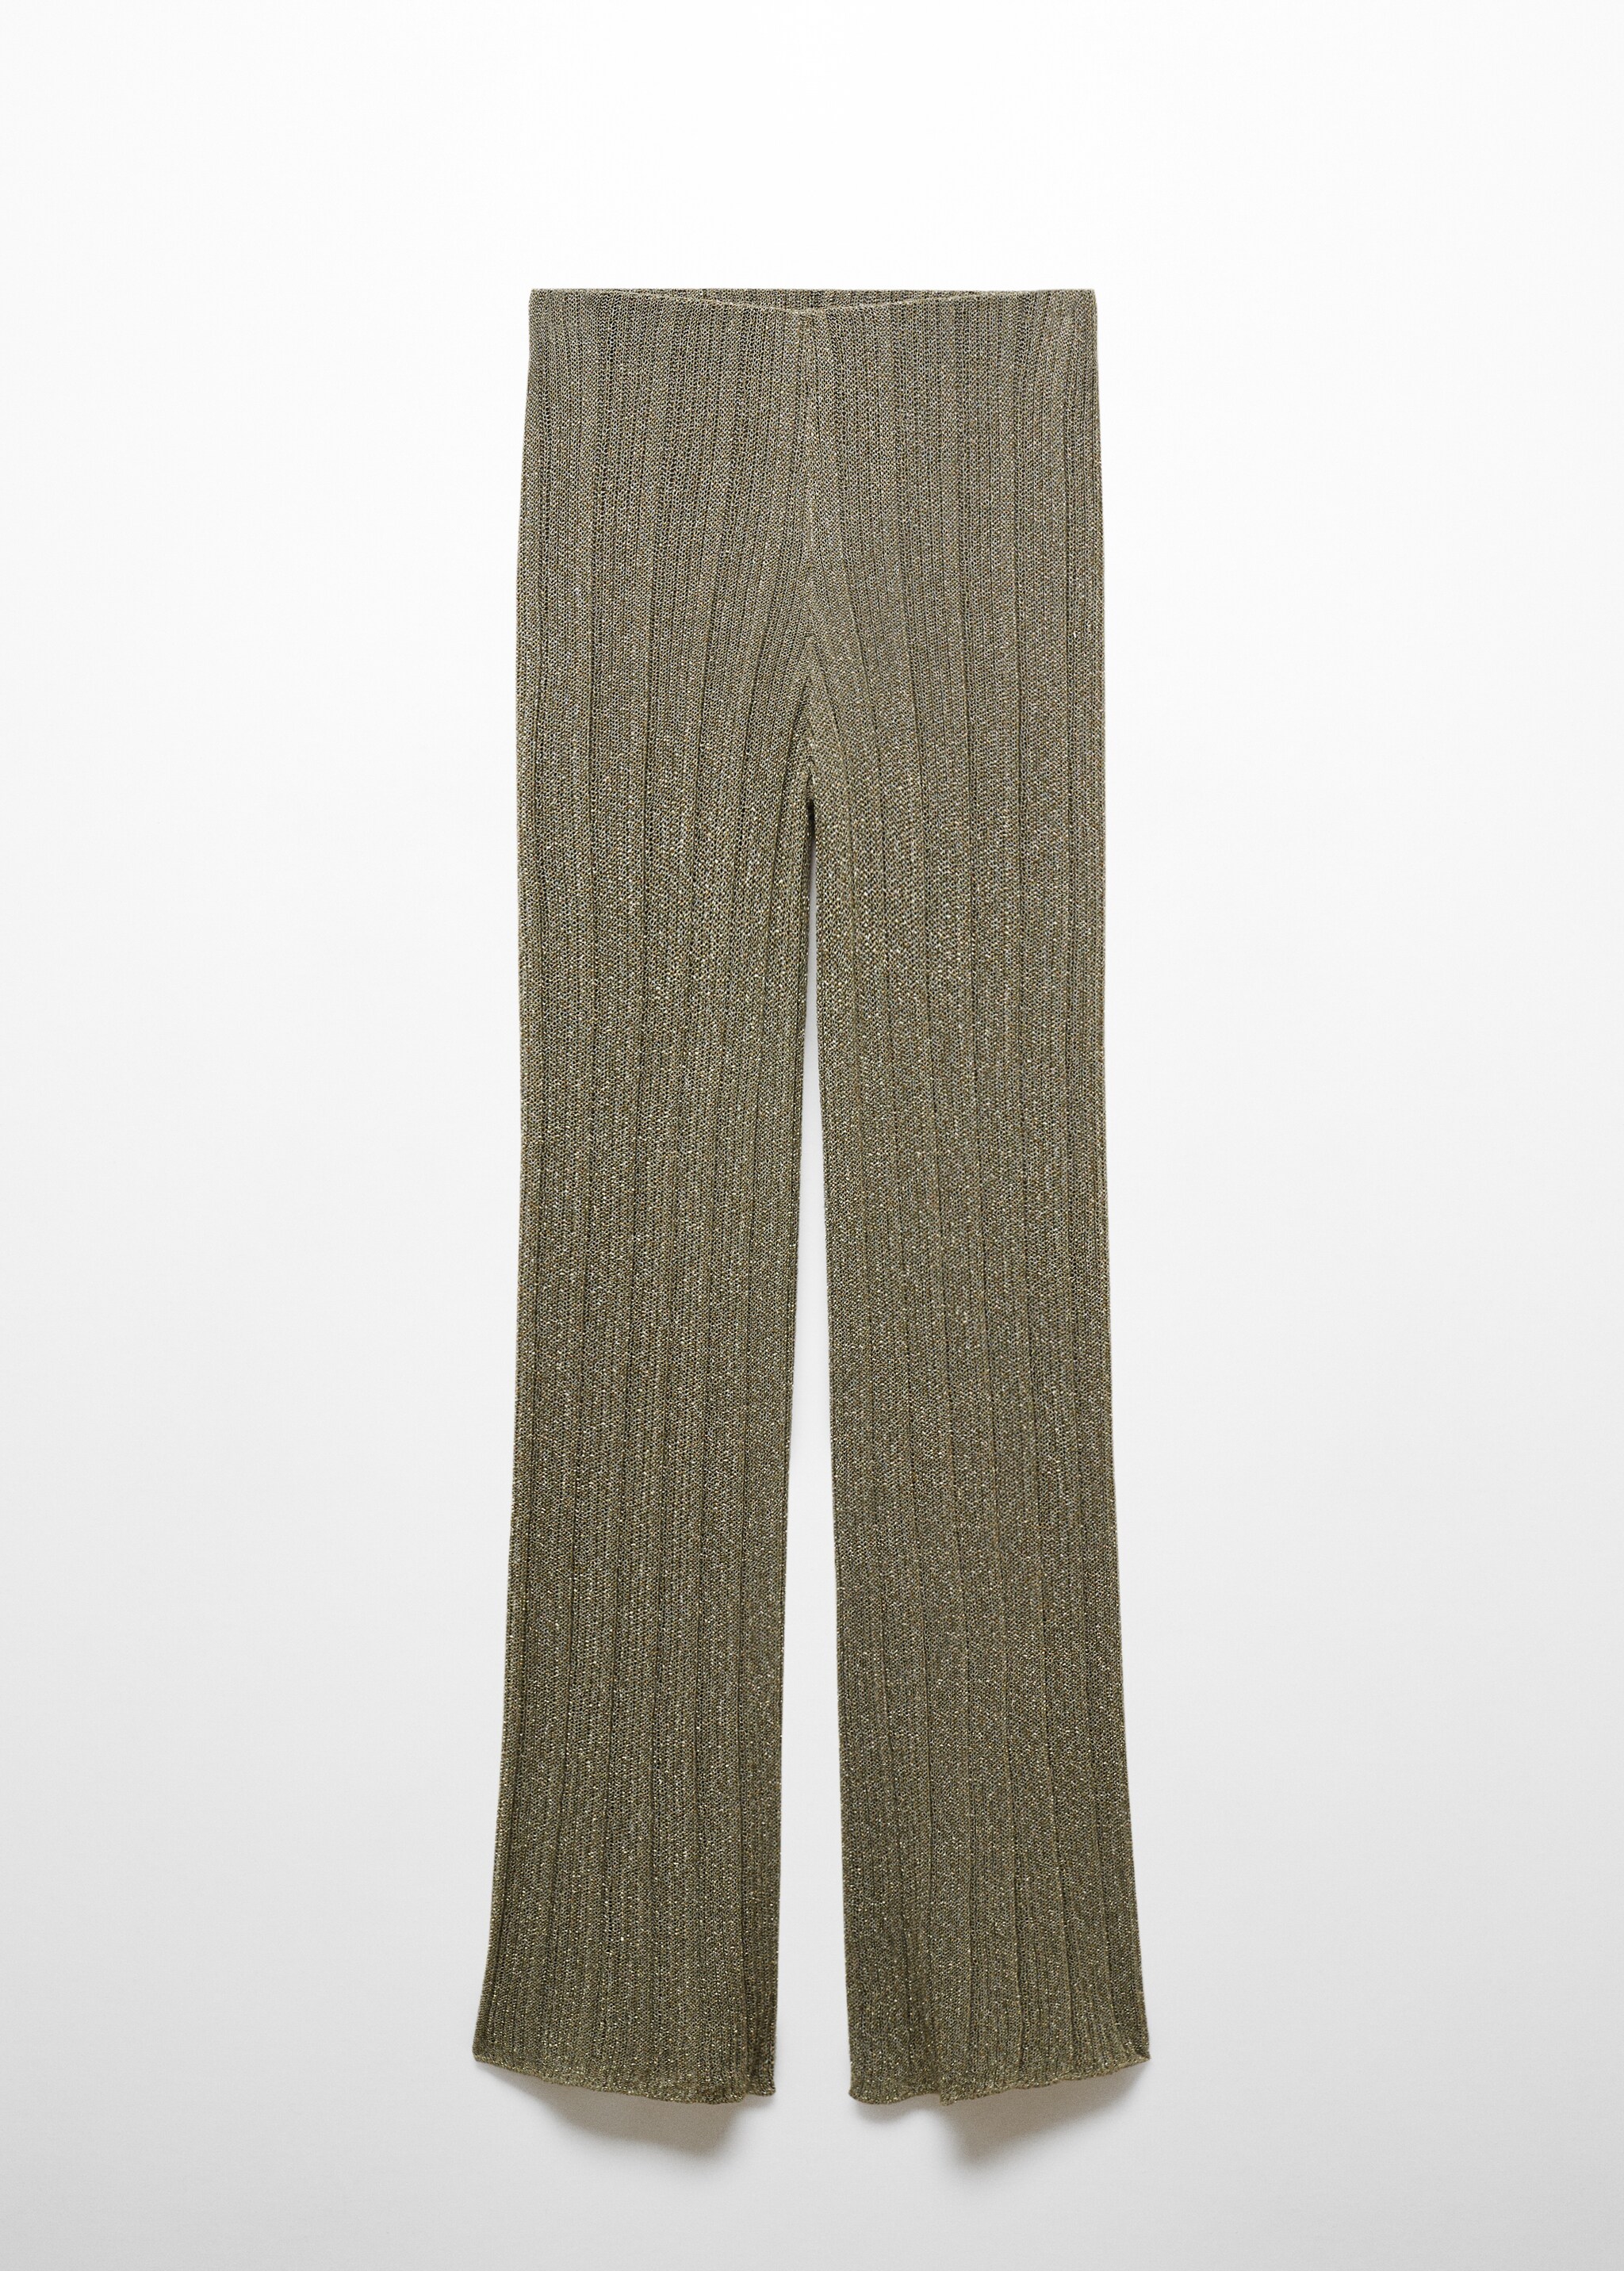 Прямые брюки из трикотажа с люрексом - Изделие без модели